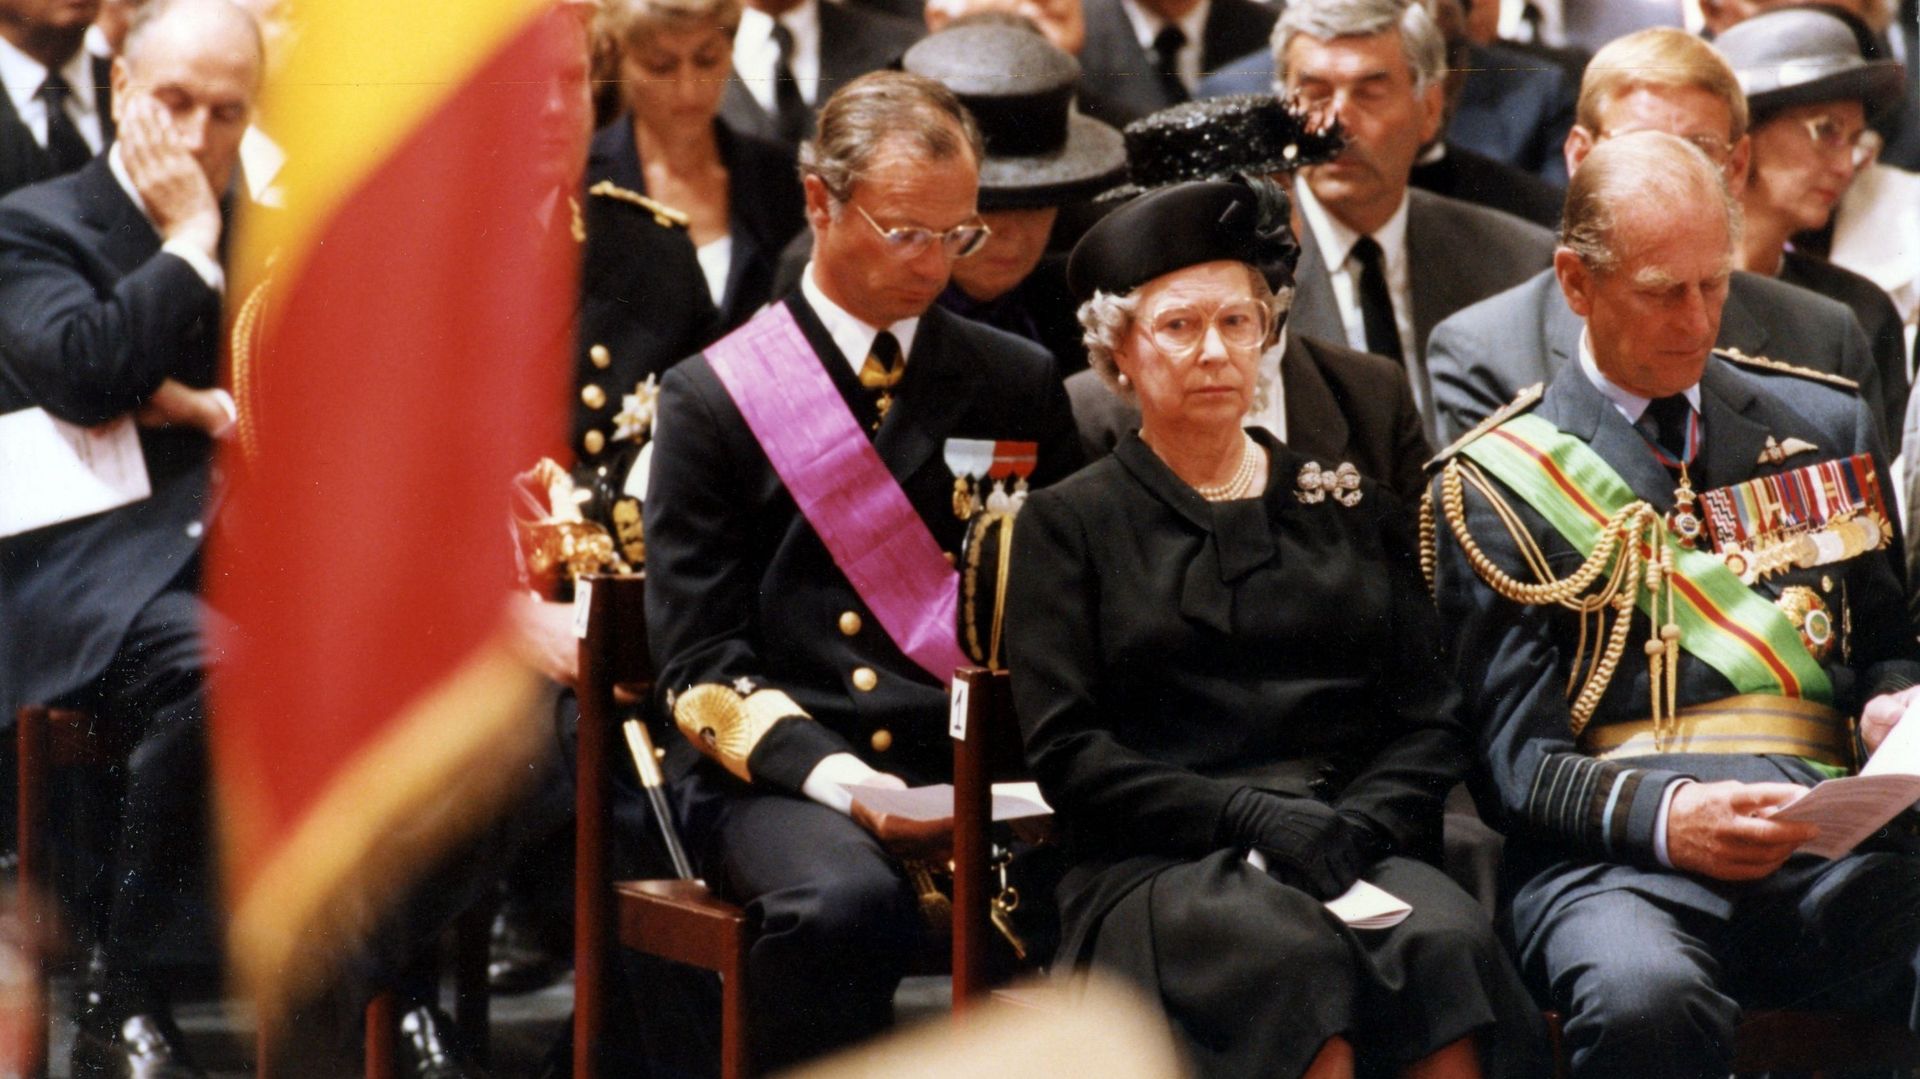 La Reine Elizabeth II avait assisté aux funérailles du Roi Baudoin, une présence exceptionnelle pour la Reine qui n'assiste jamais aux funérailles d'un dirigeant à l'étranger.